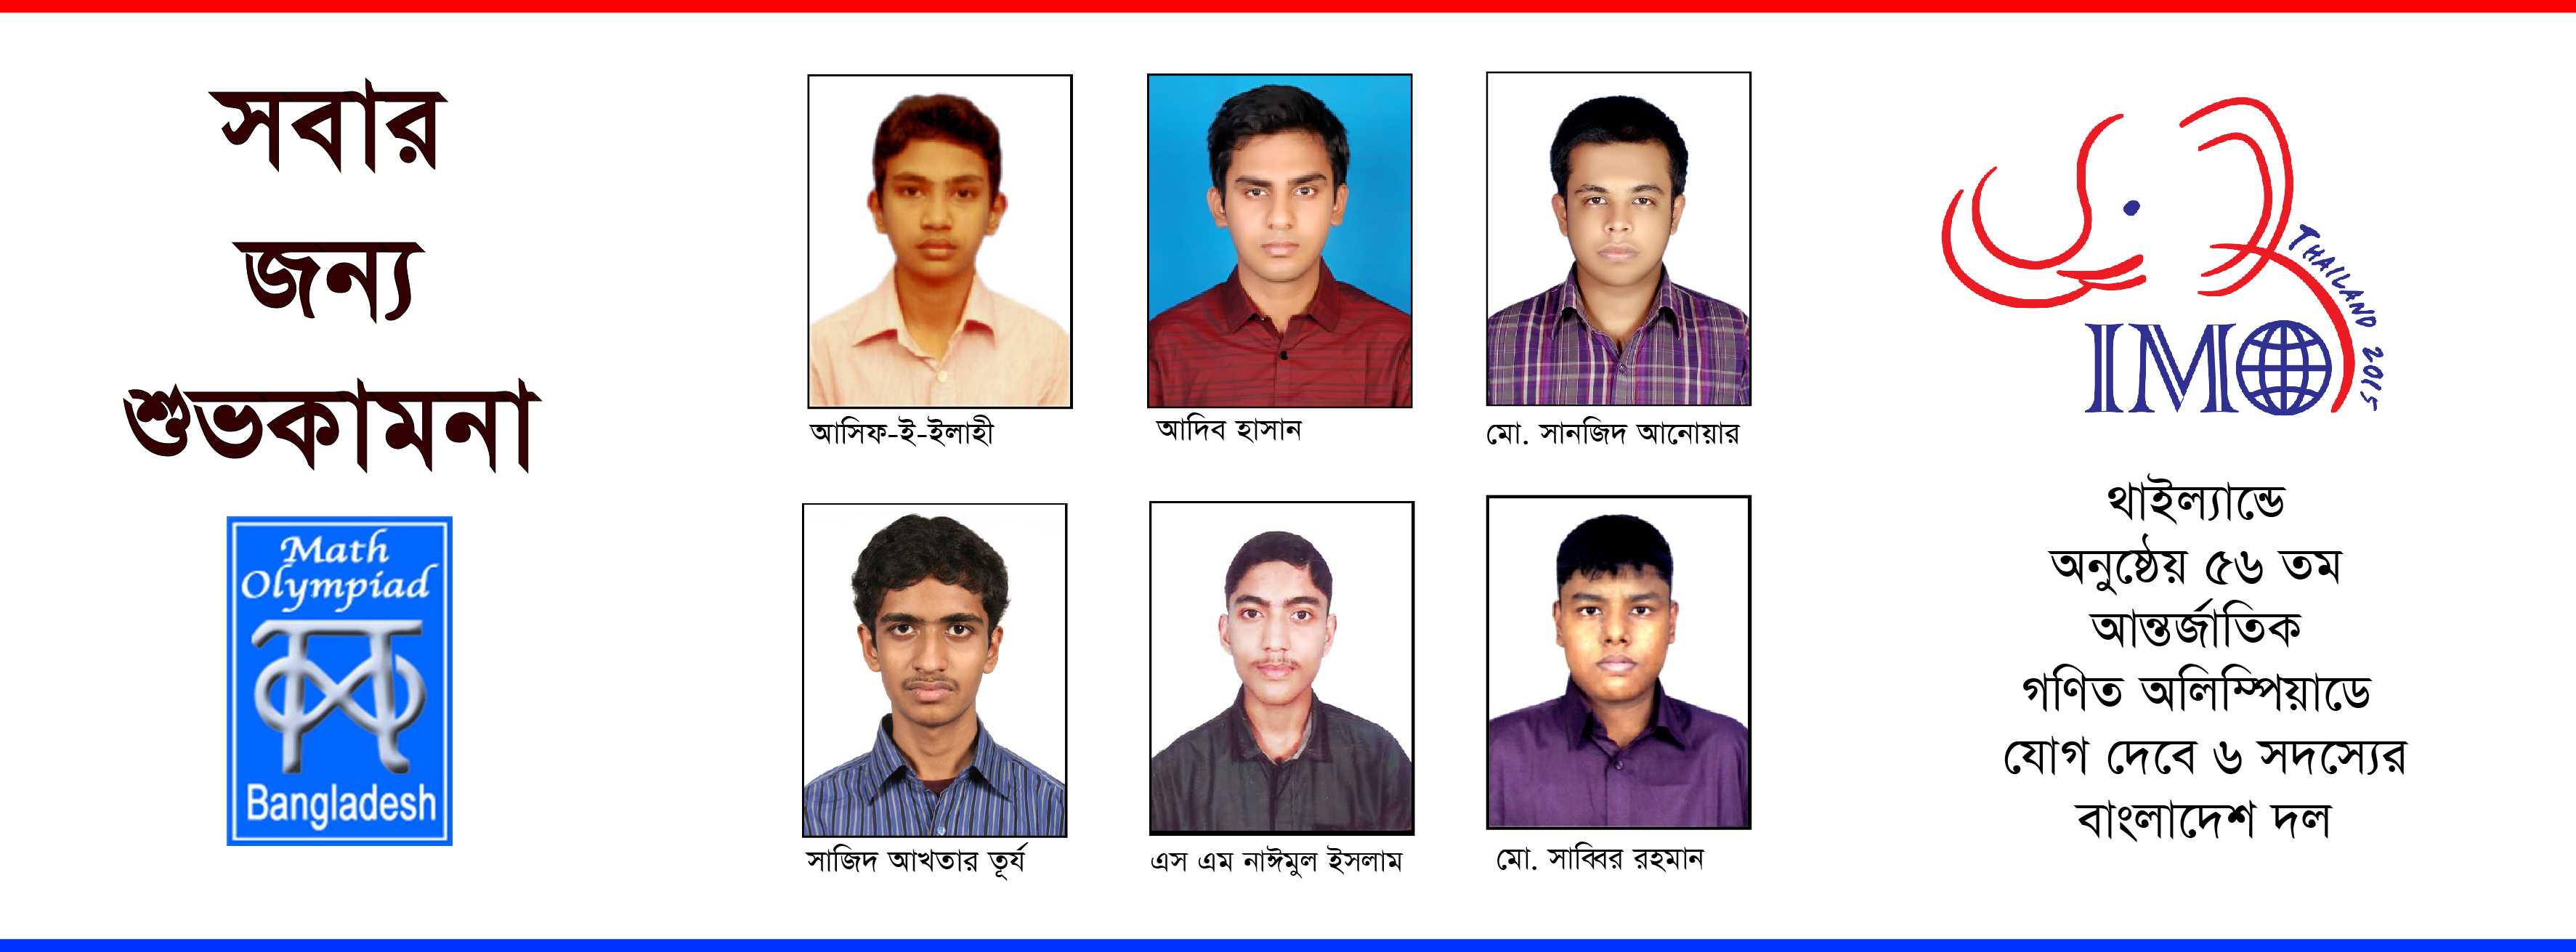 56-international-math-olympiad-bangladesh-team